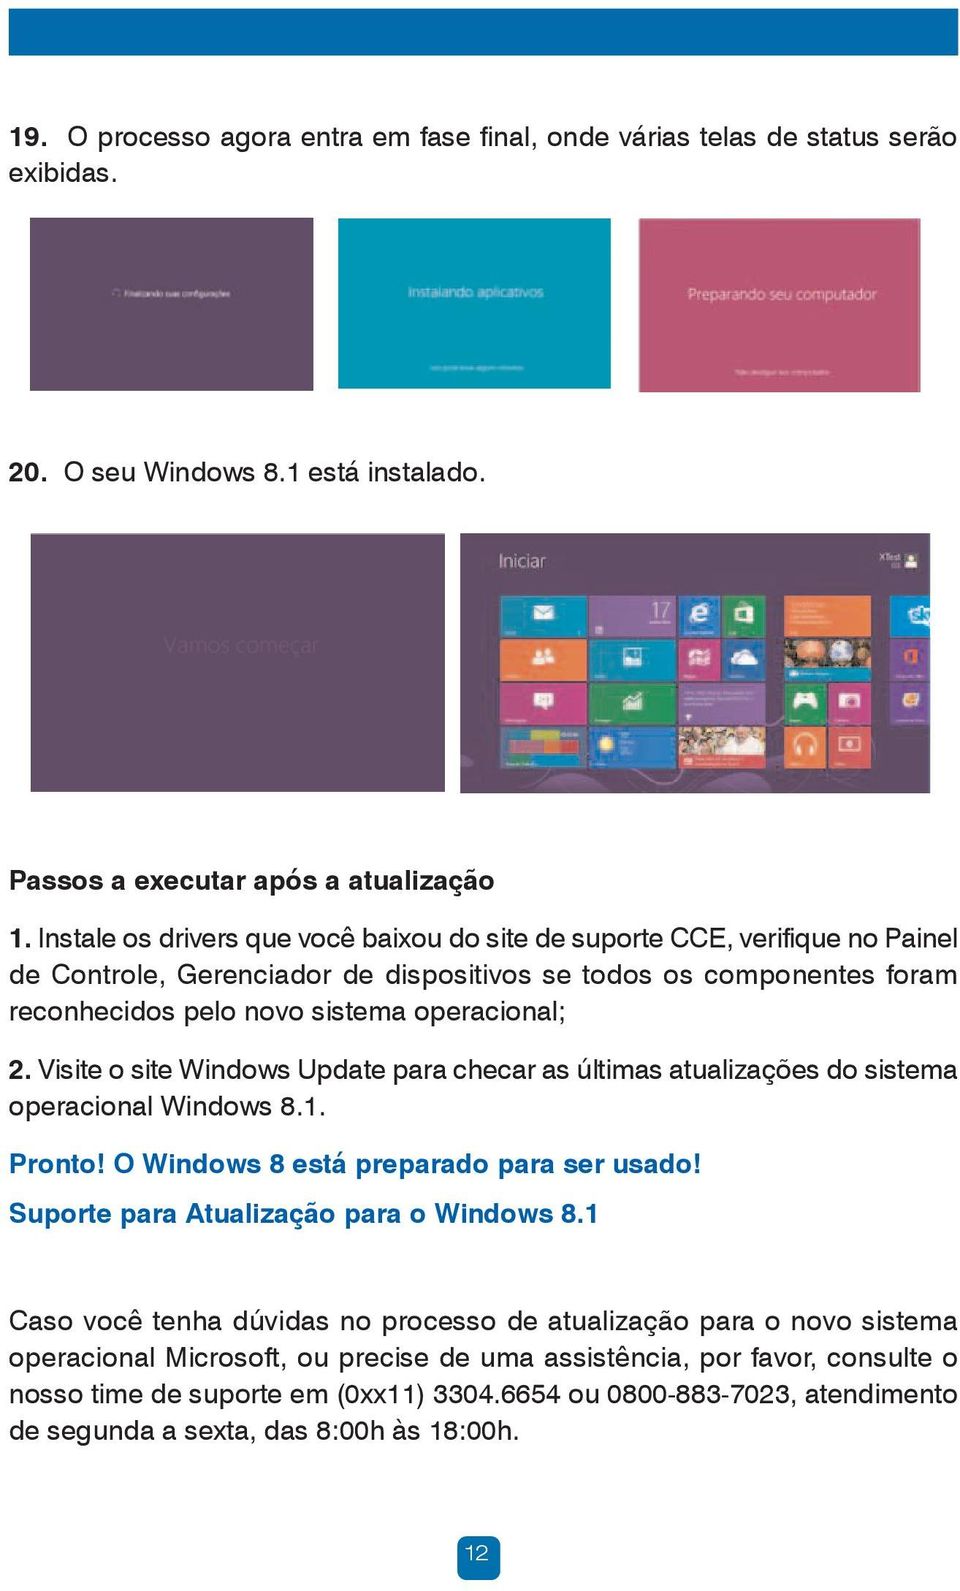 Visite o site Windows Update para checar as últimas atualizações do sistema operacional Windows 8.1. Pronto! O Windows 8 está preparado para ser usado! Suporte para Atualização para o Windows 8.